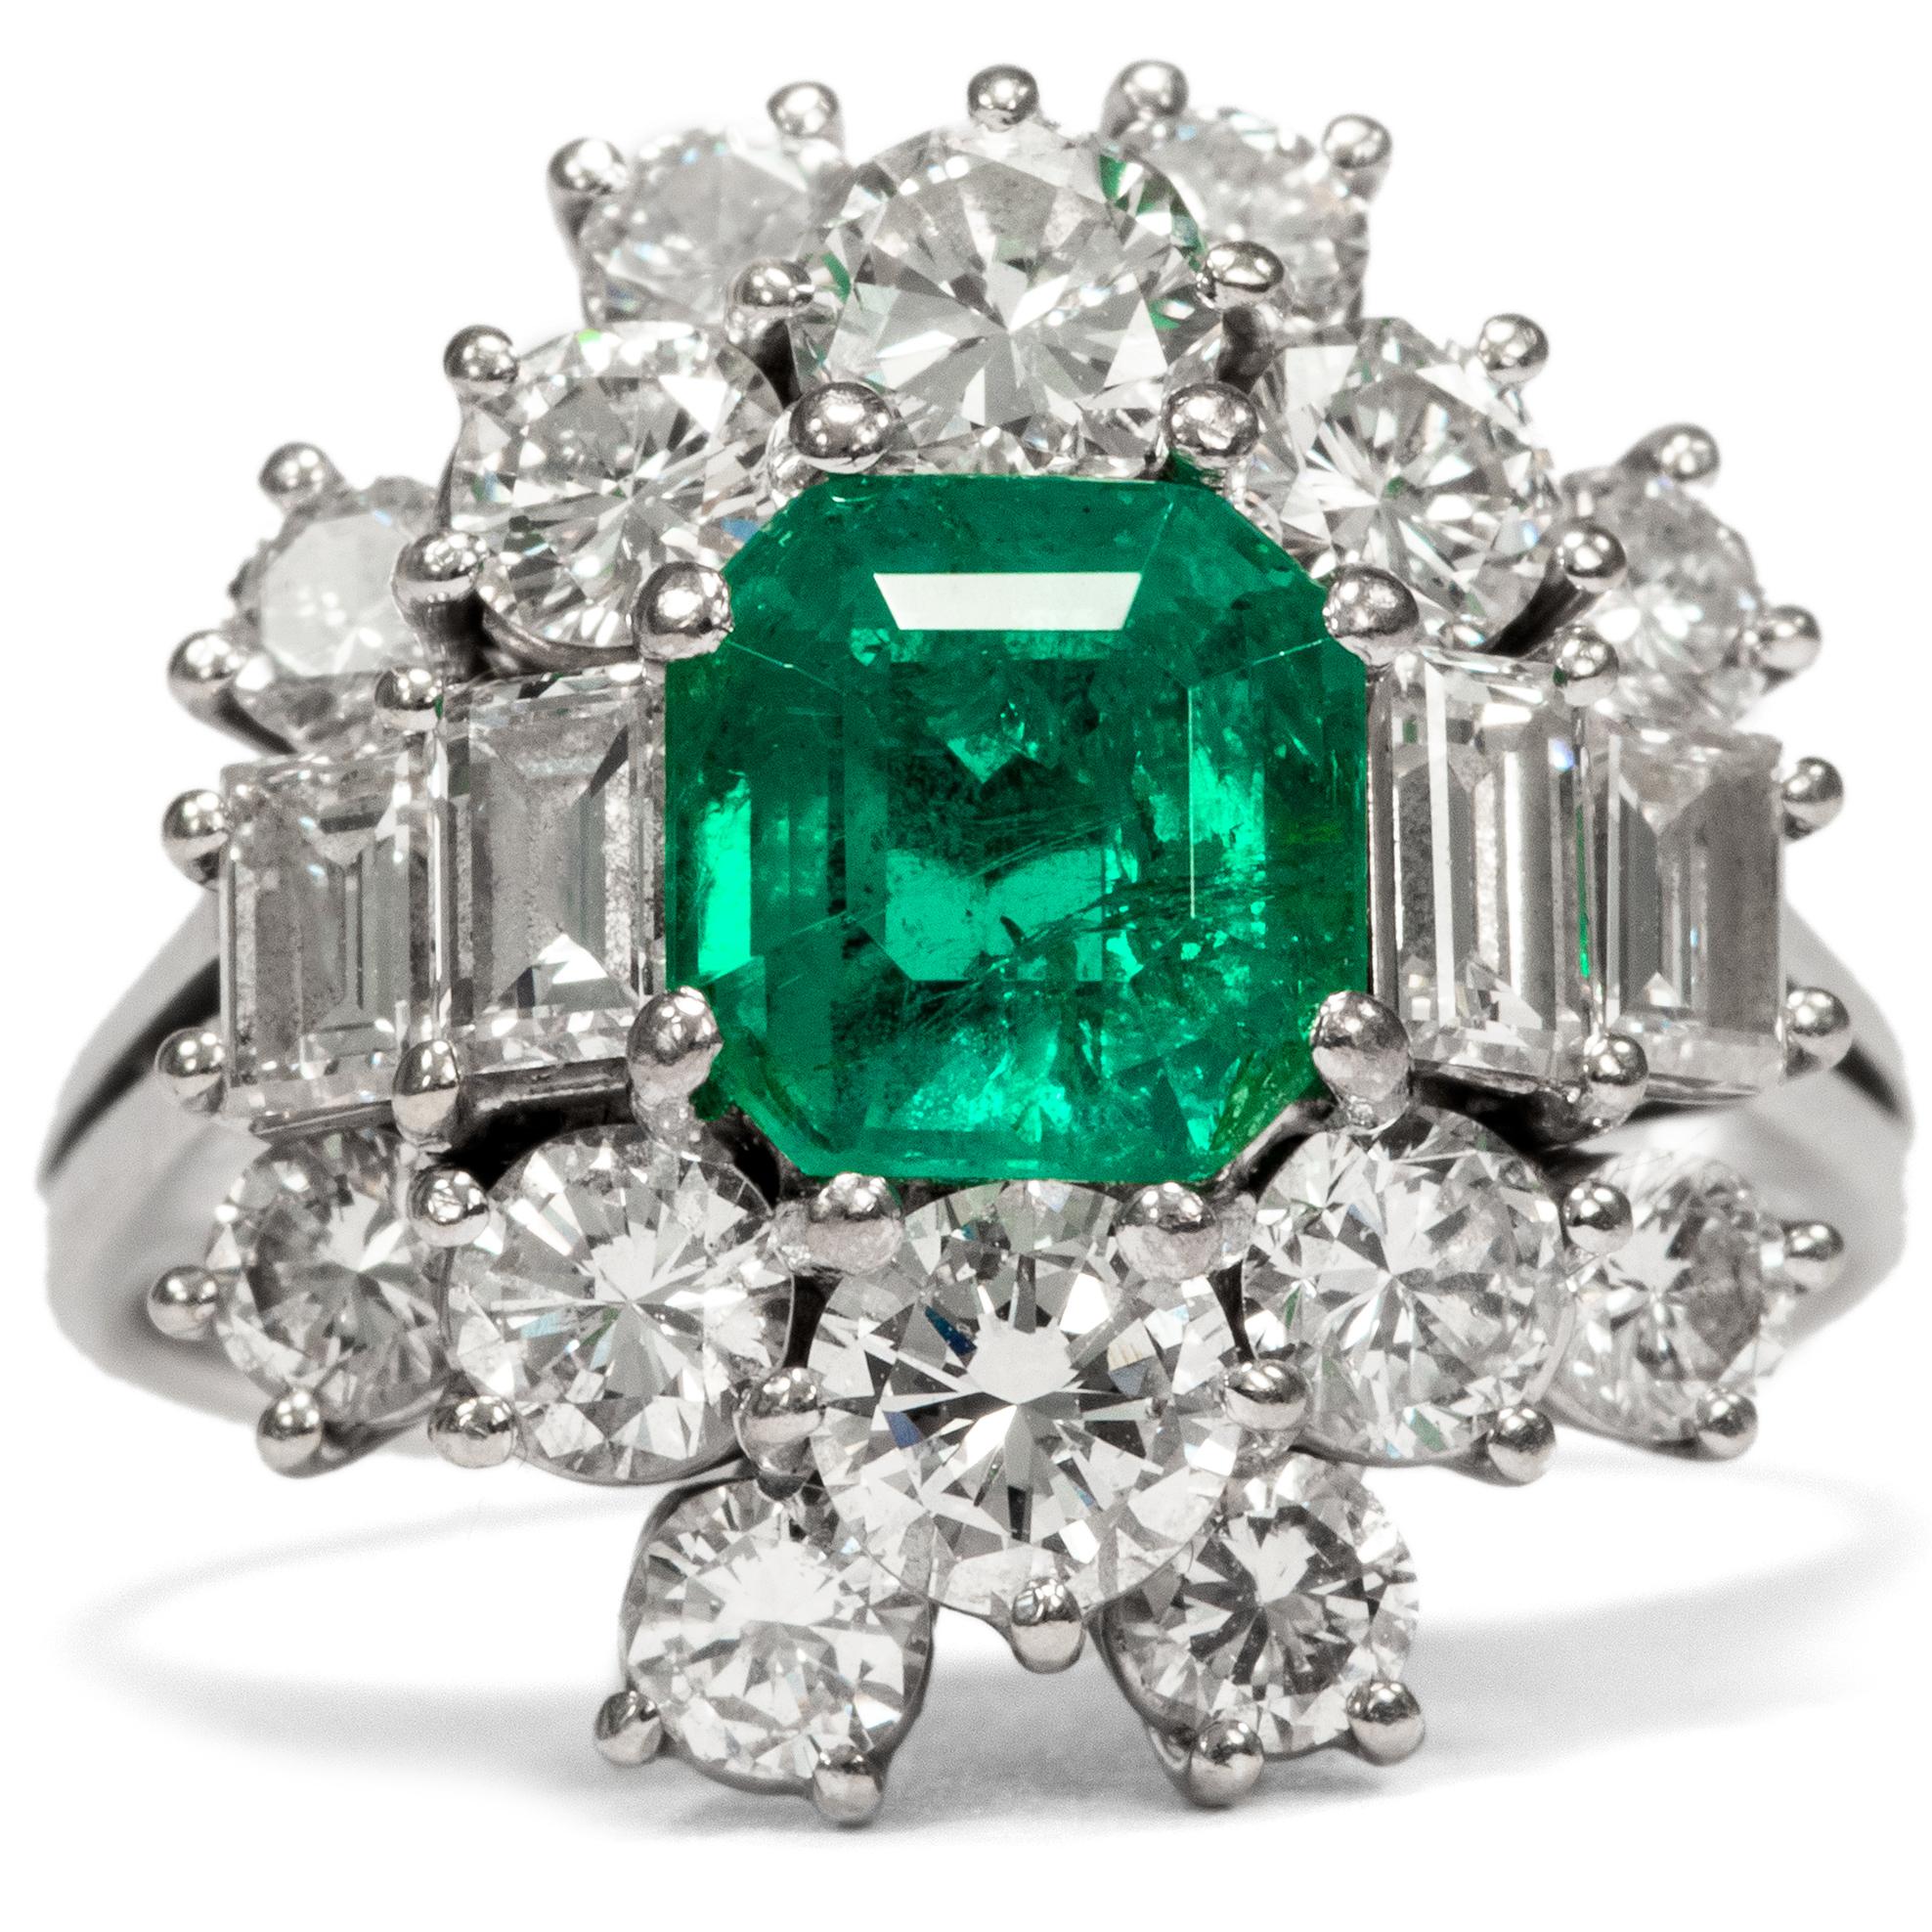 Dieser exquisite Ring ist eine kreative Interpretation des klassischen Clusterrings. In seinem Zentrum befindet sich ein leuchtend grüner Smaragd, wunderschön klar und mit einem Gewicht von 1,30 Karat. 18 Diamanten im Brillant- und Baguetteschliff